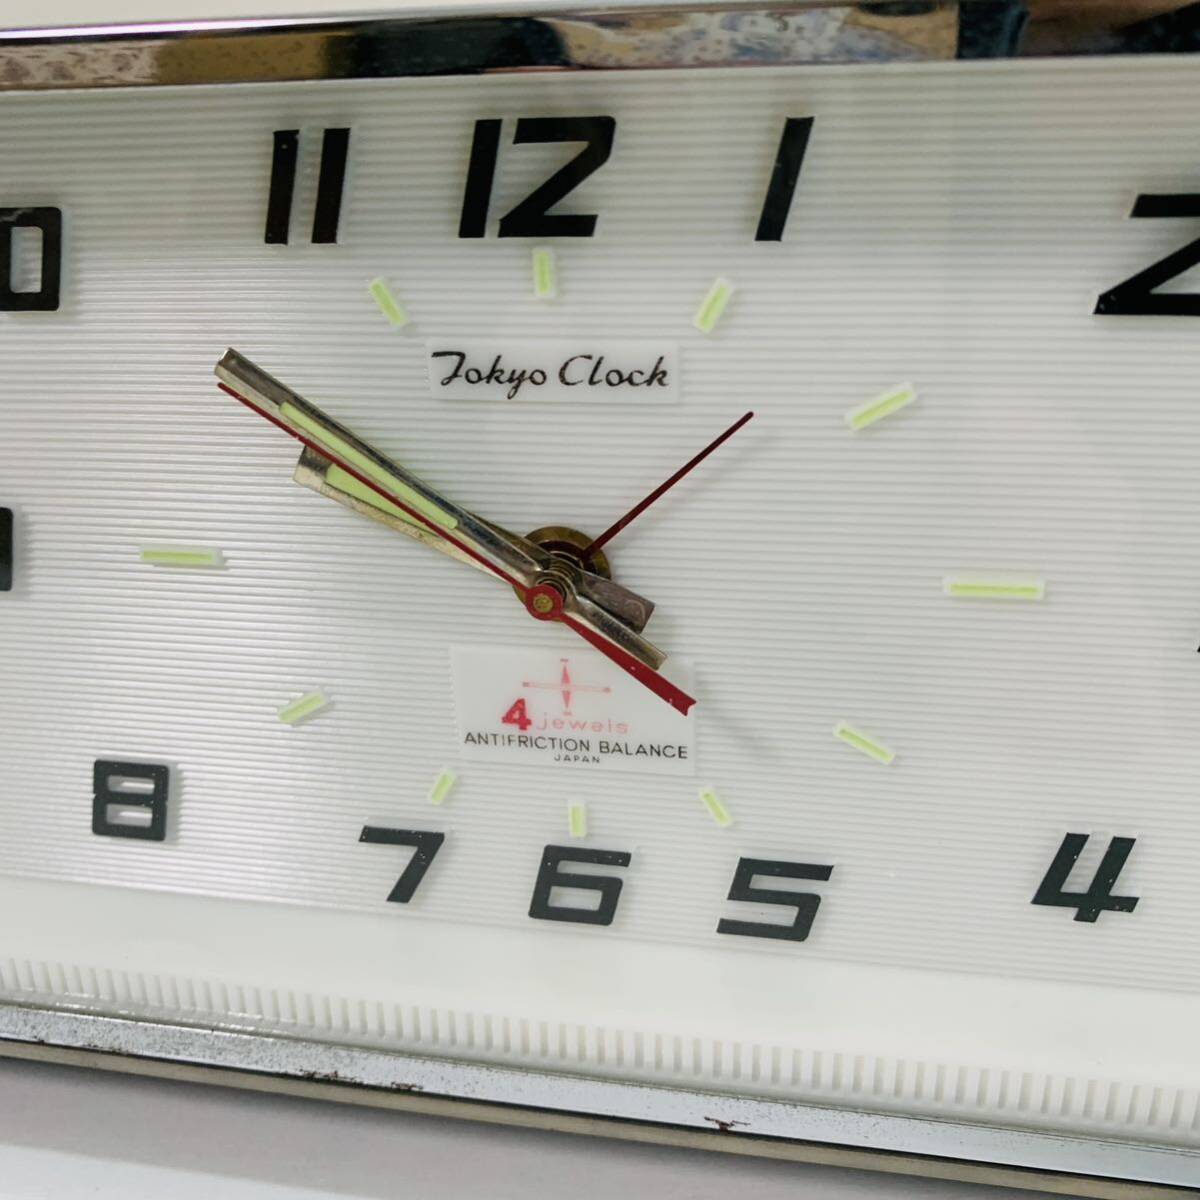 東京時計 Tokyo Clock 4Jewels ANTIFRICTION BALANCE 平天府棒鈴目覚 No.1778 アイビー レトロ アンティーク 置時計 目覚まし 動作確認済の画像6